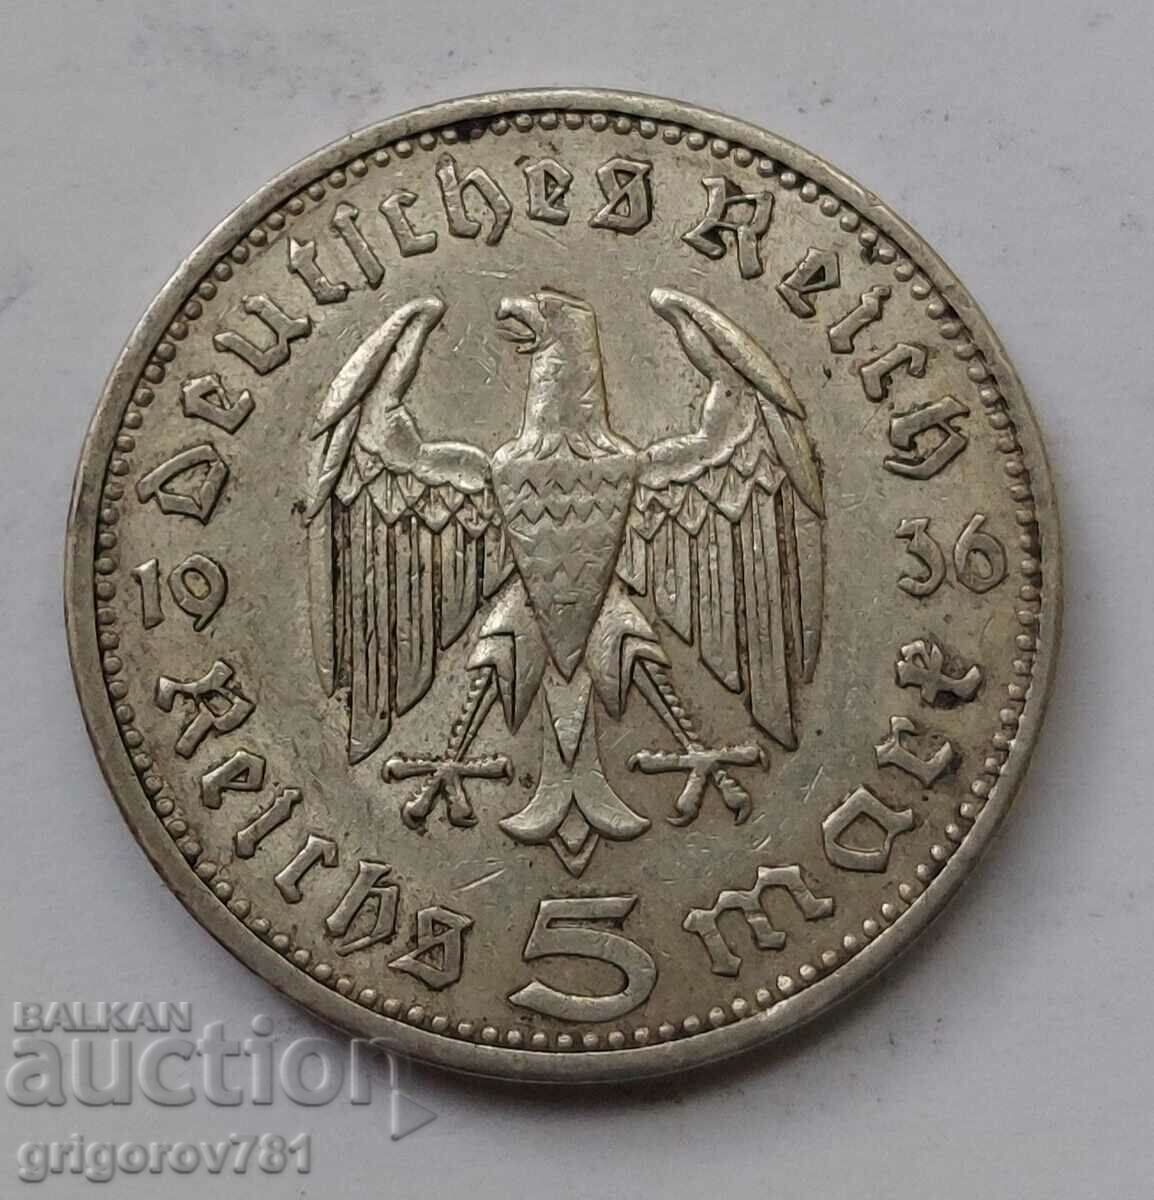 Ασημένιο 5 Marks Γερμανία 1936 Ασημένιο νόμισμα A III Reich #95